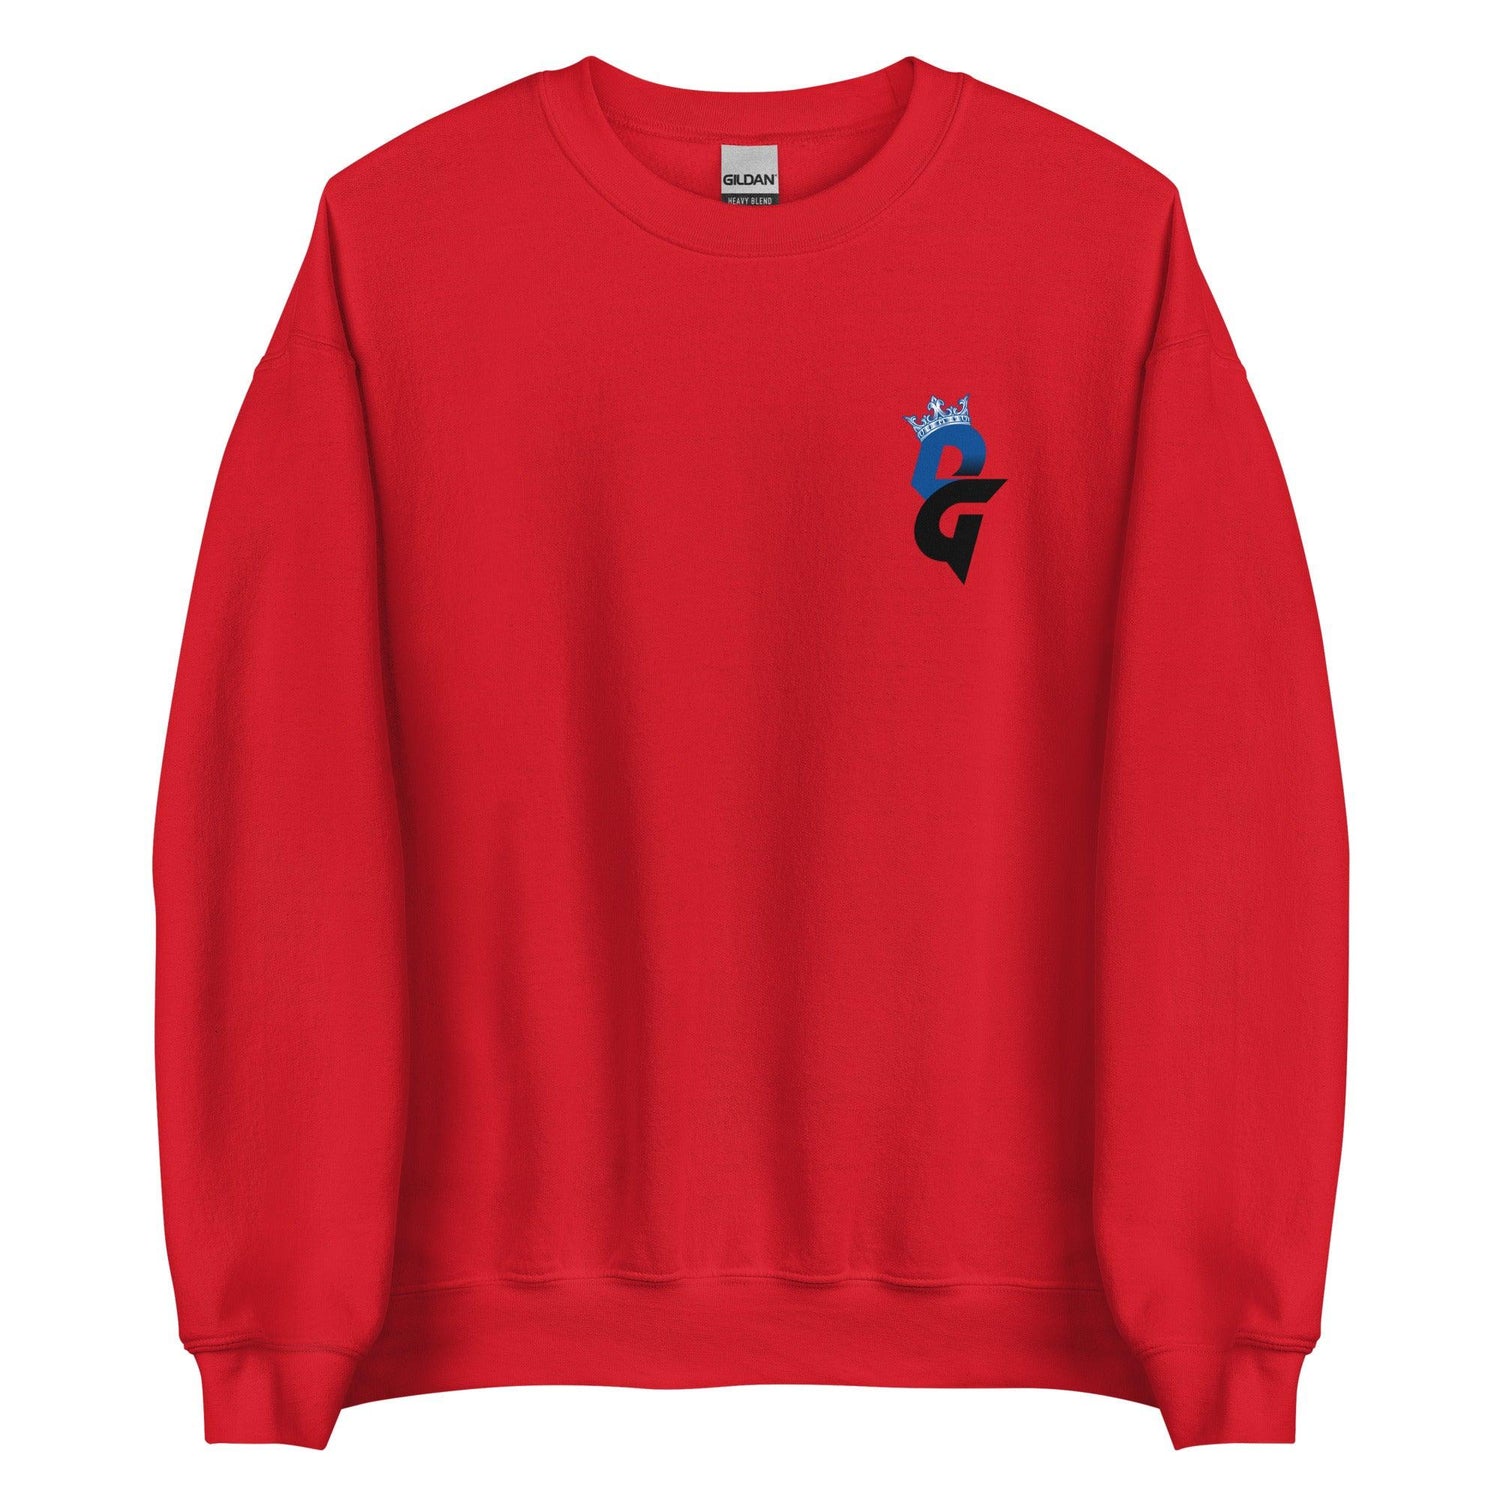 Darren Grainger "Essential" Sweatshirt - Fan Arch